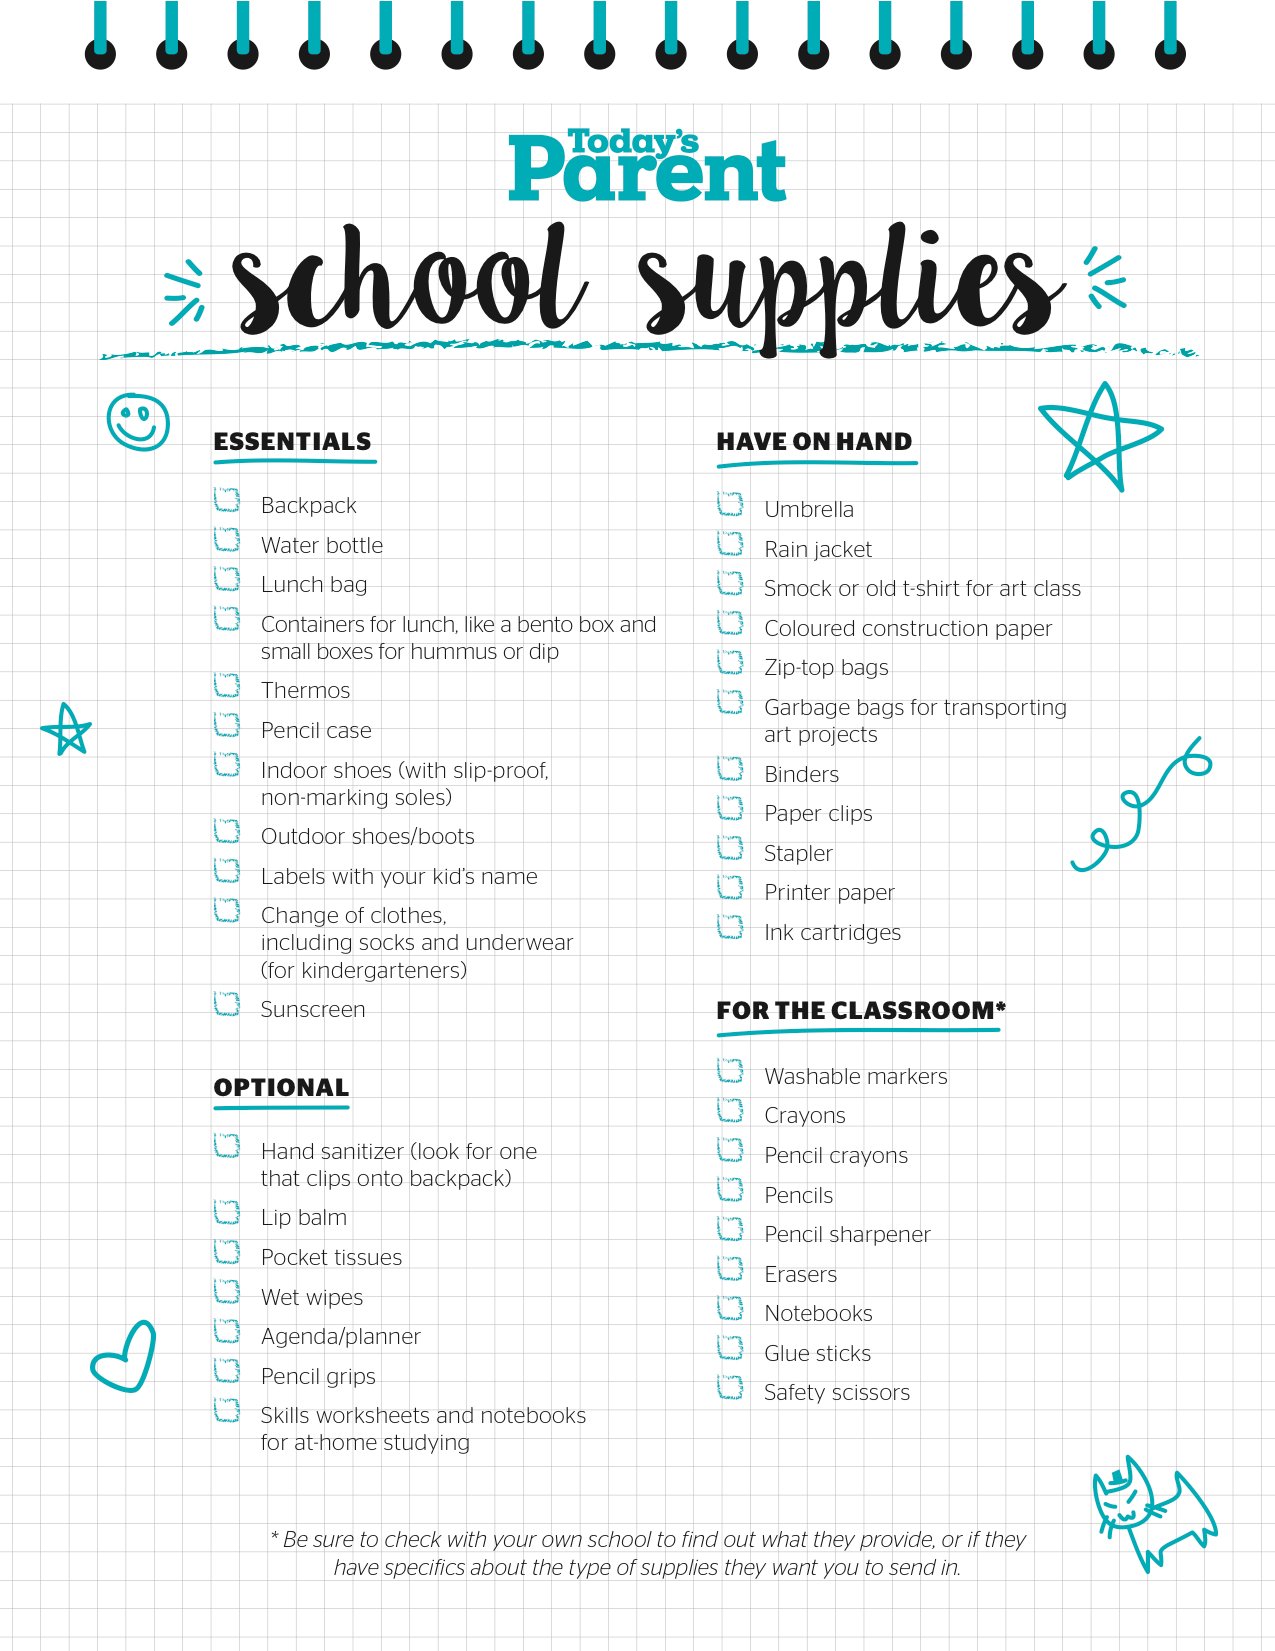 Printable school supplies checklist